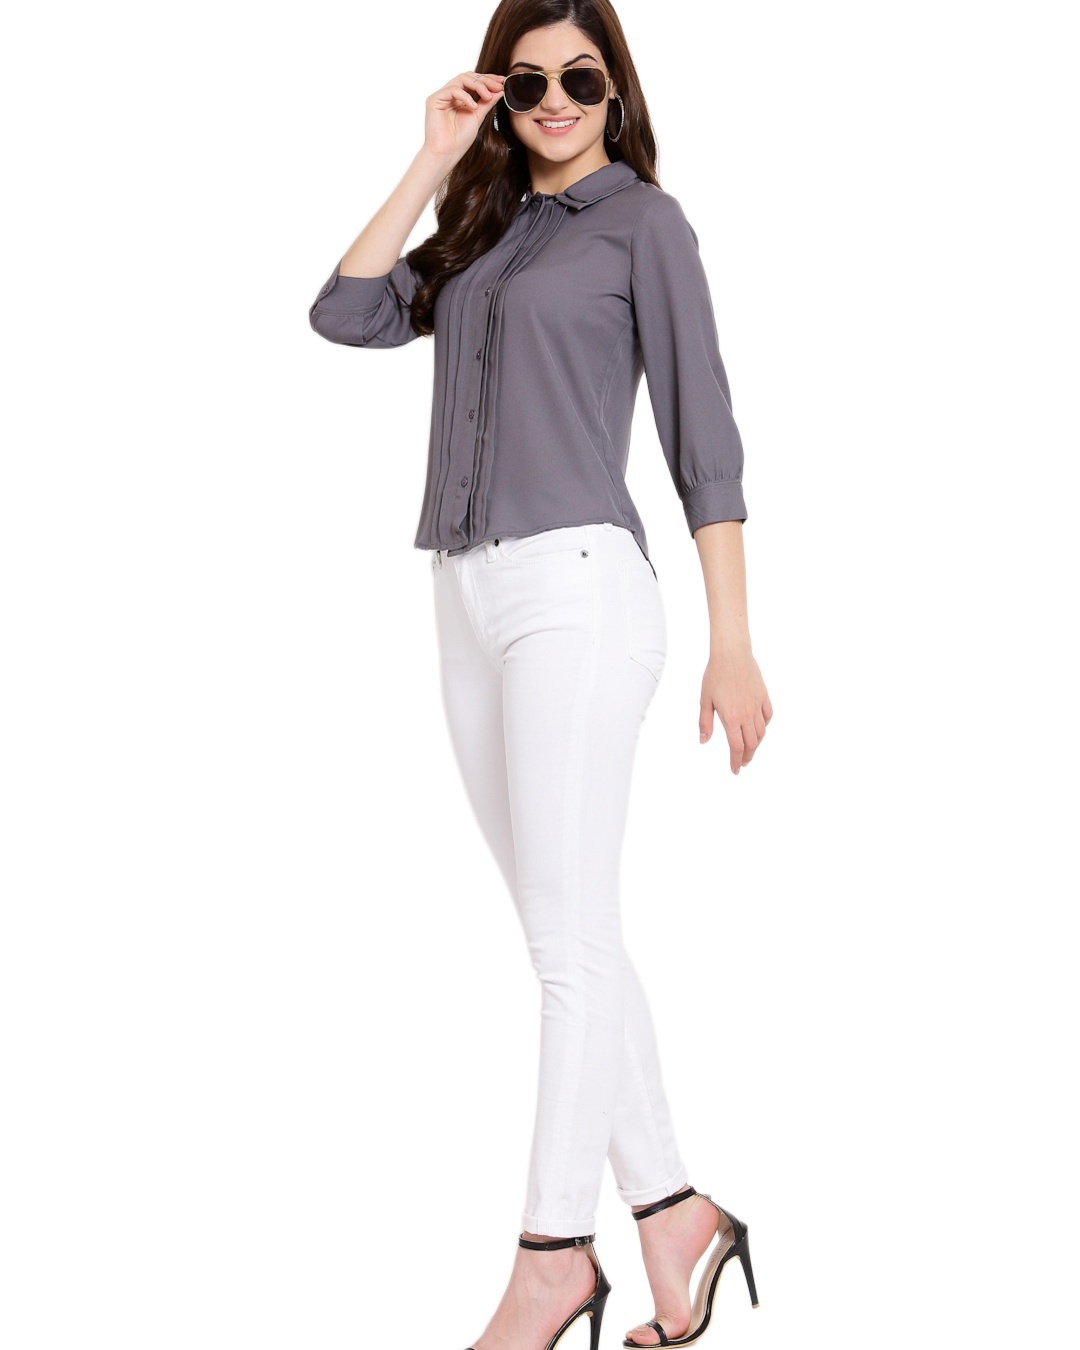 Shop Women's Grey Shirt-Full